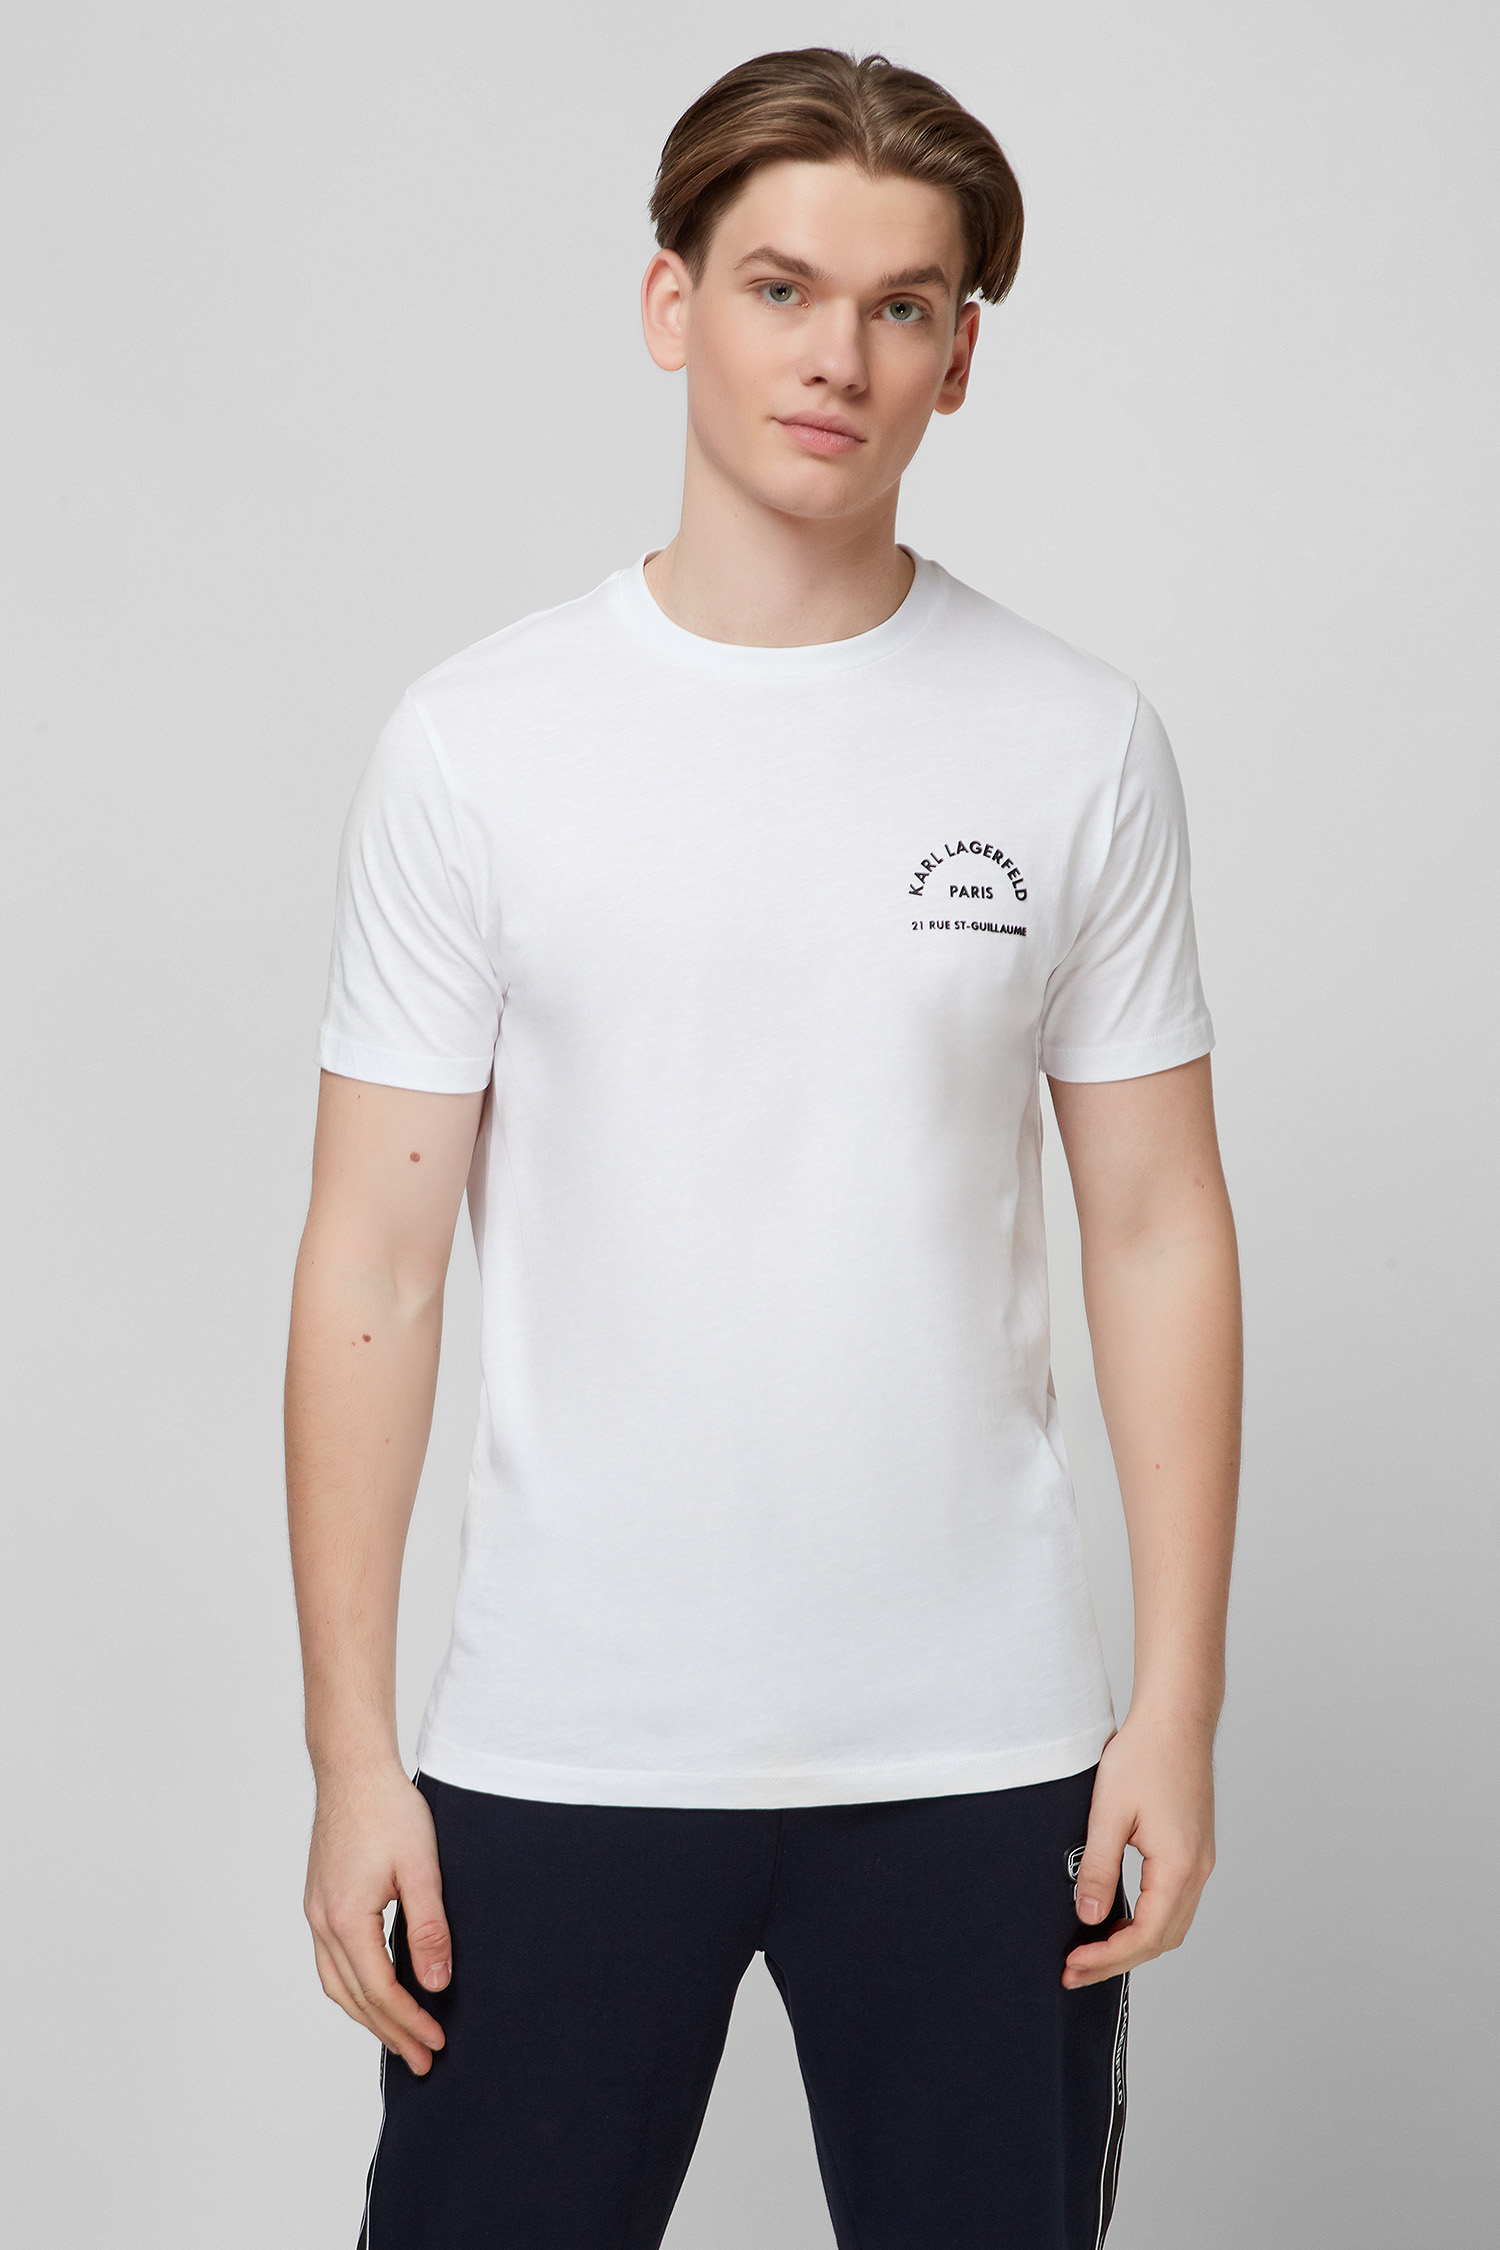 Біла футболка для хлопців Karl Lagerfeld 512224.755045;10